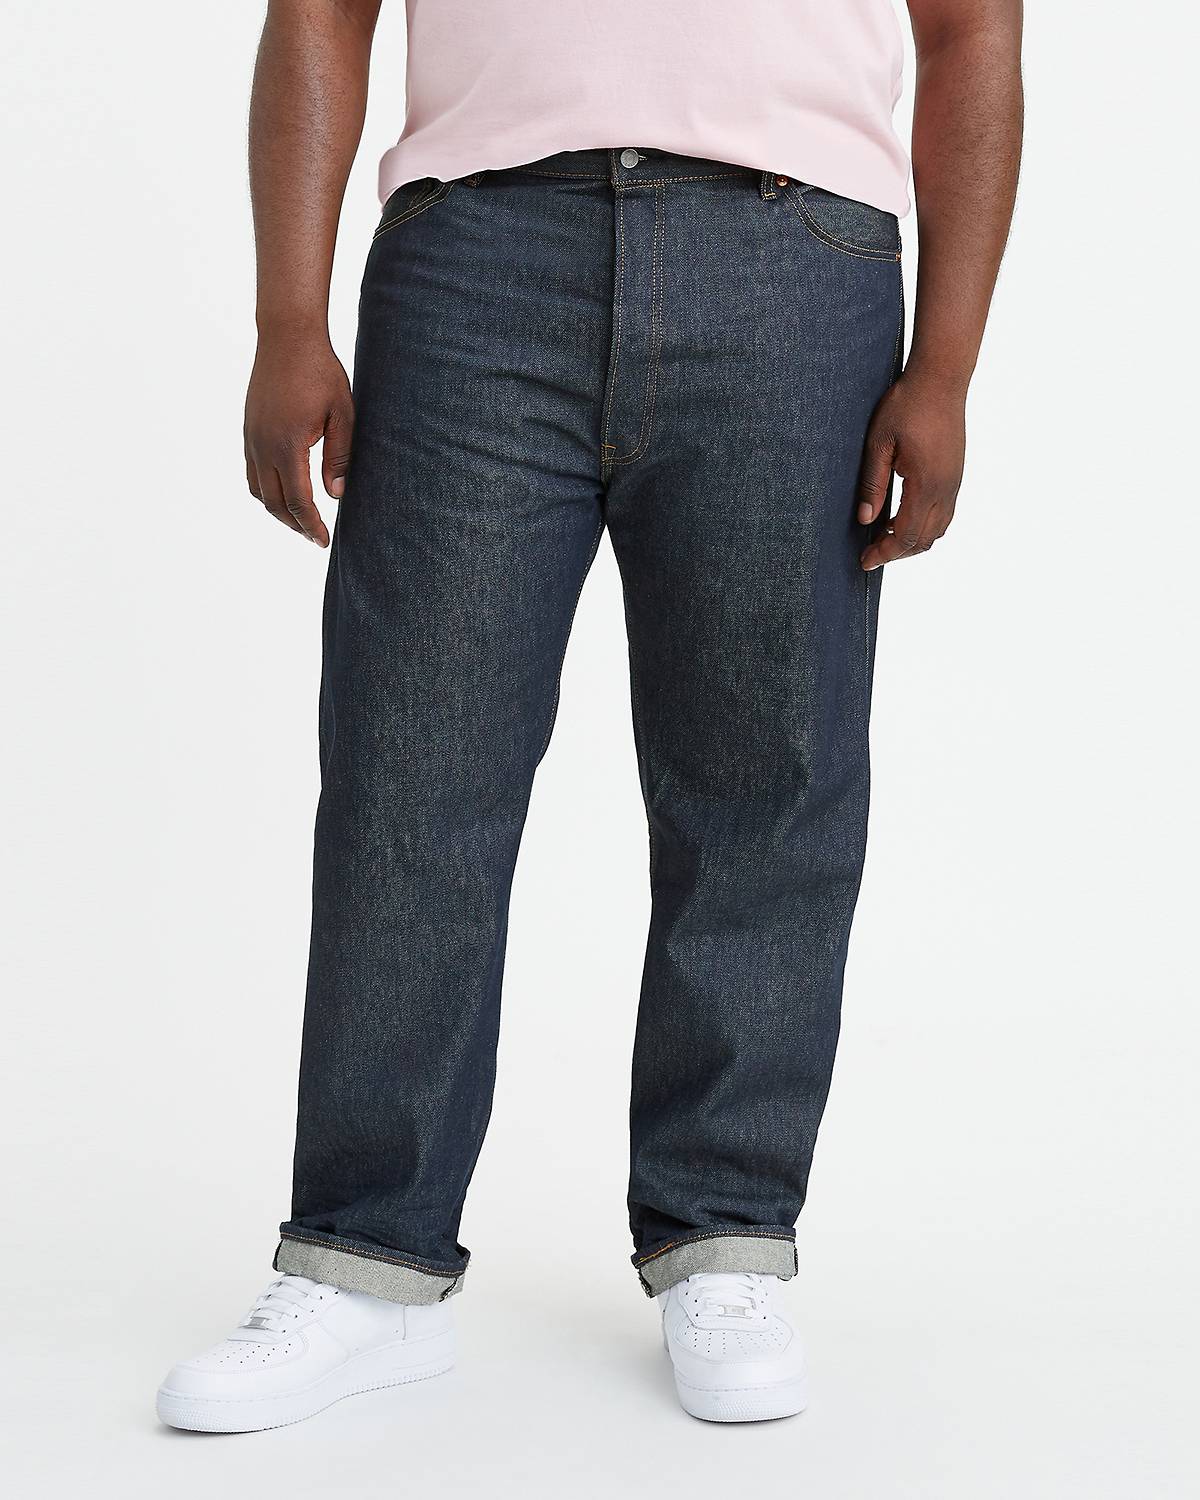 Levi's Brown 501 Original Fit Jeans